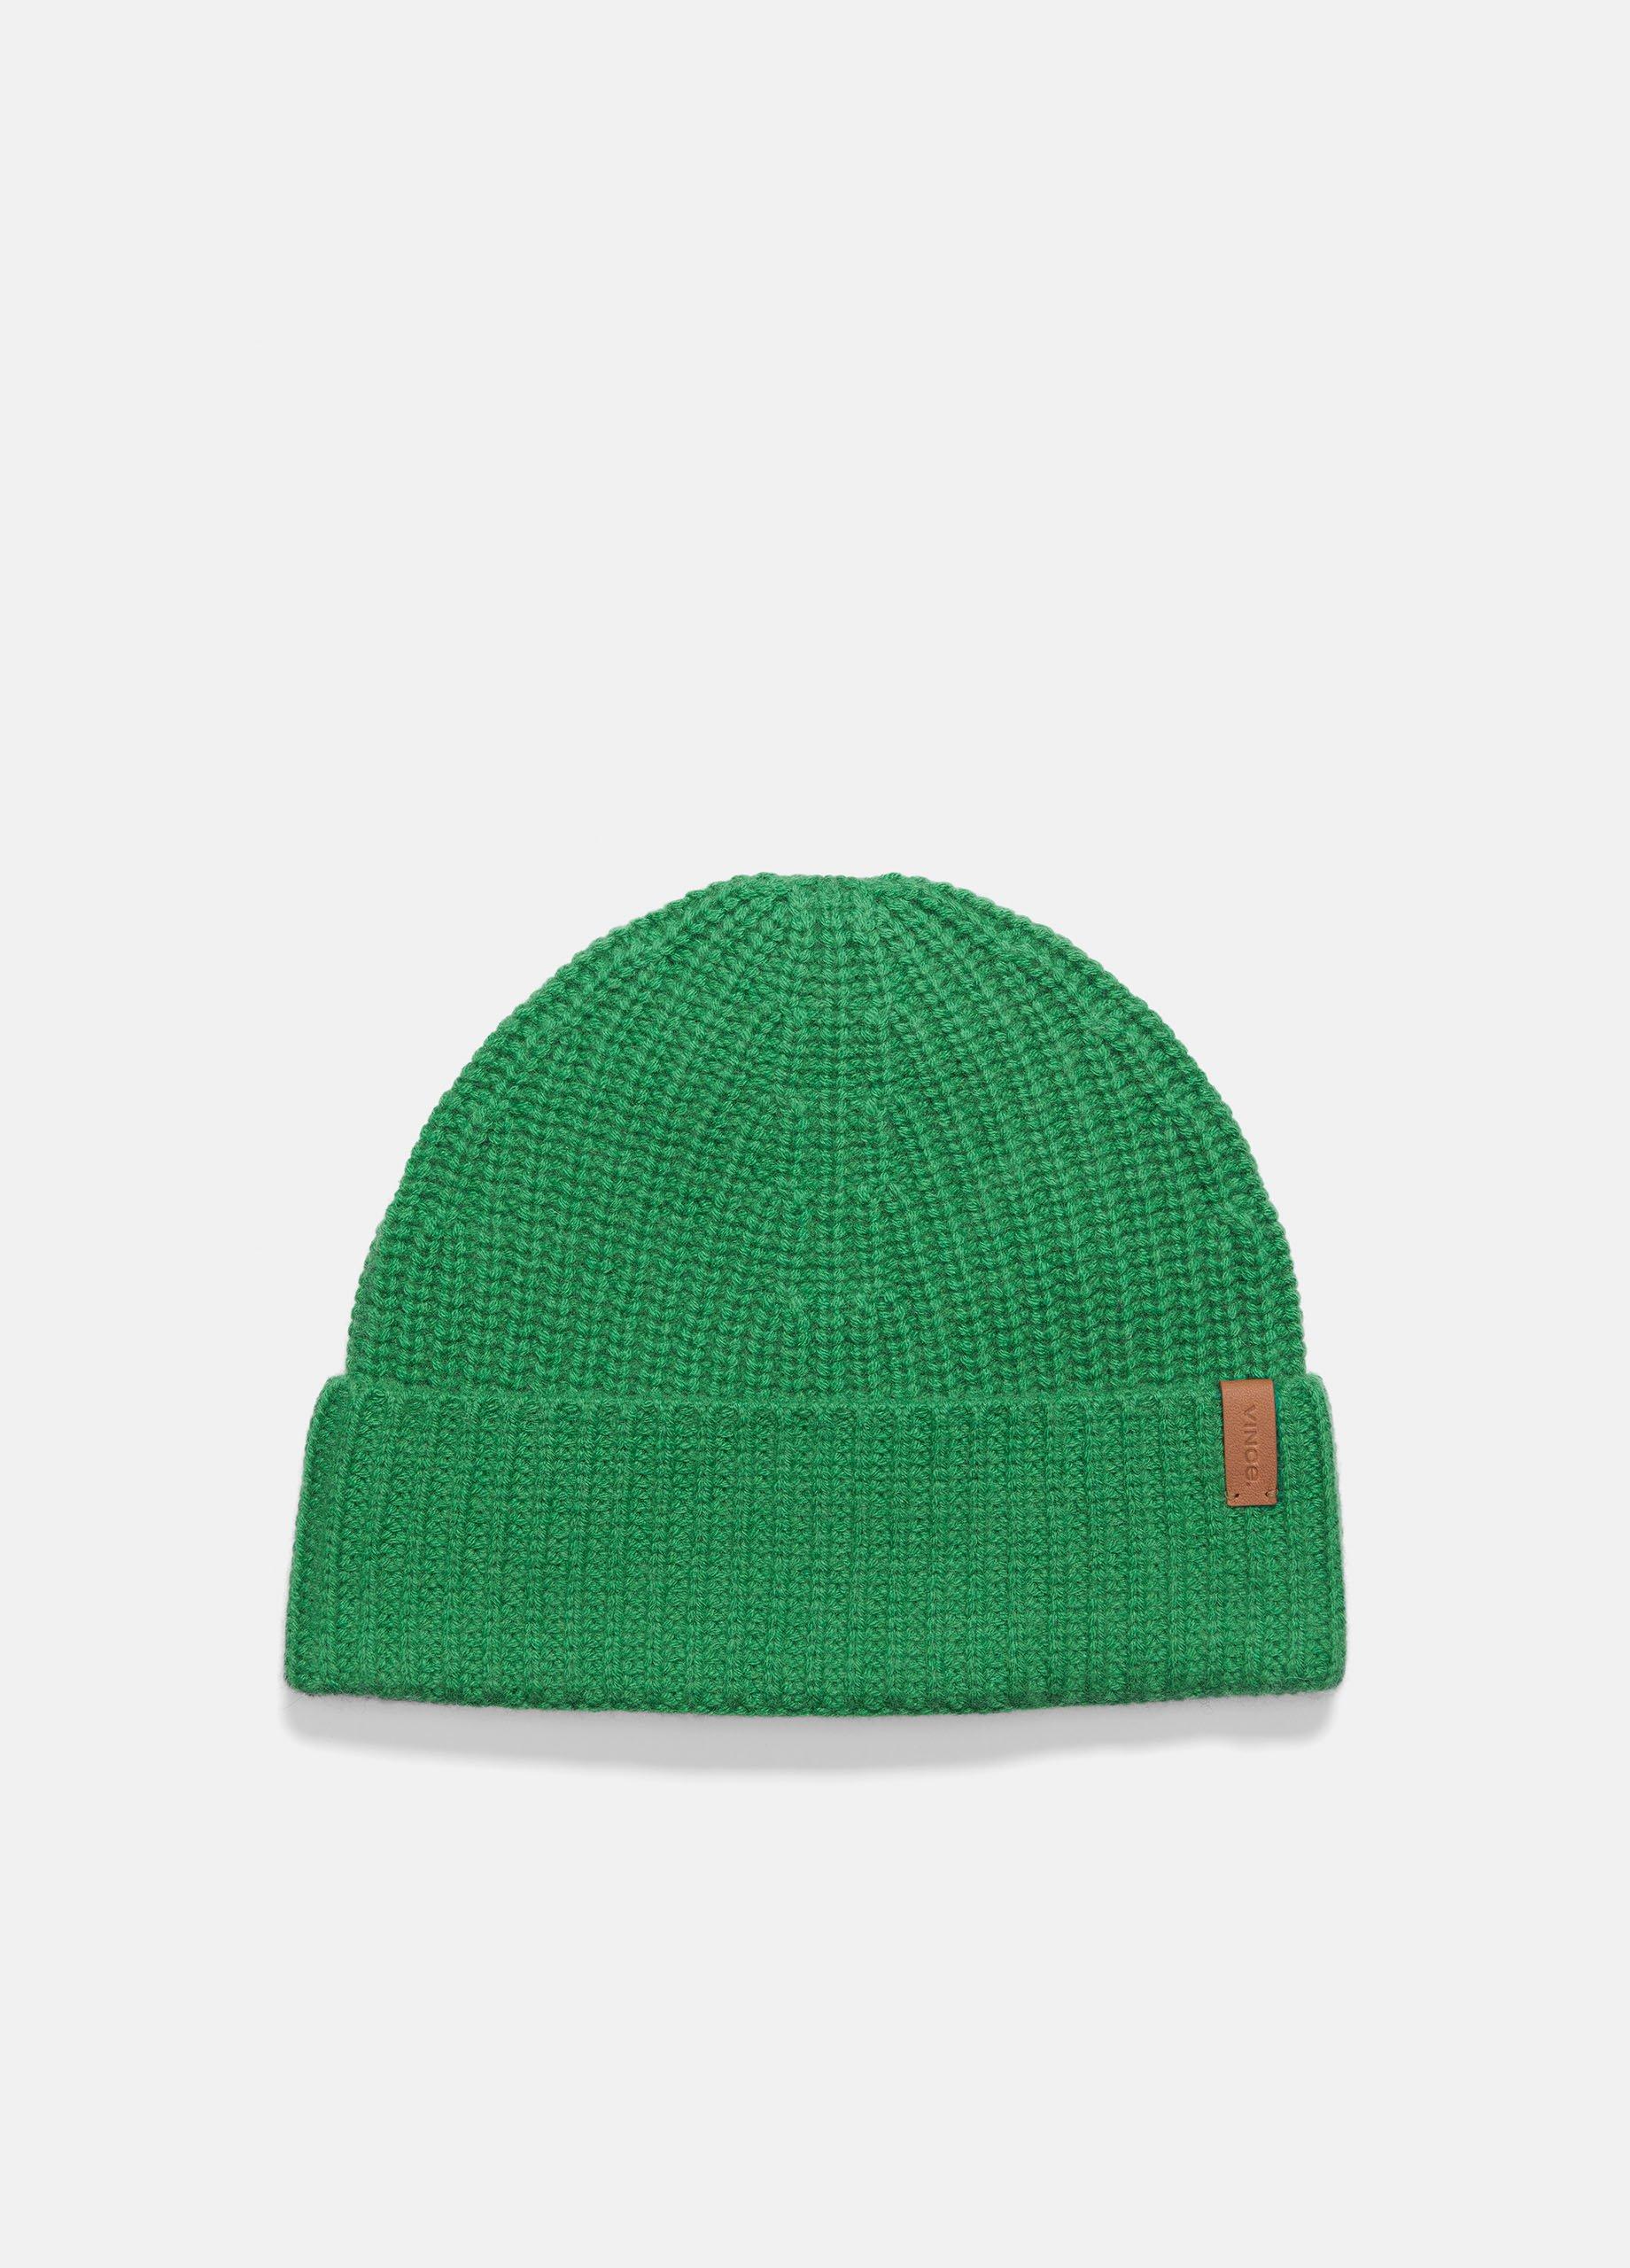 Wool-Cashmere Shaker-stitch Hat, Jade Leaf Vince